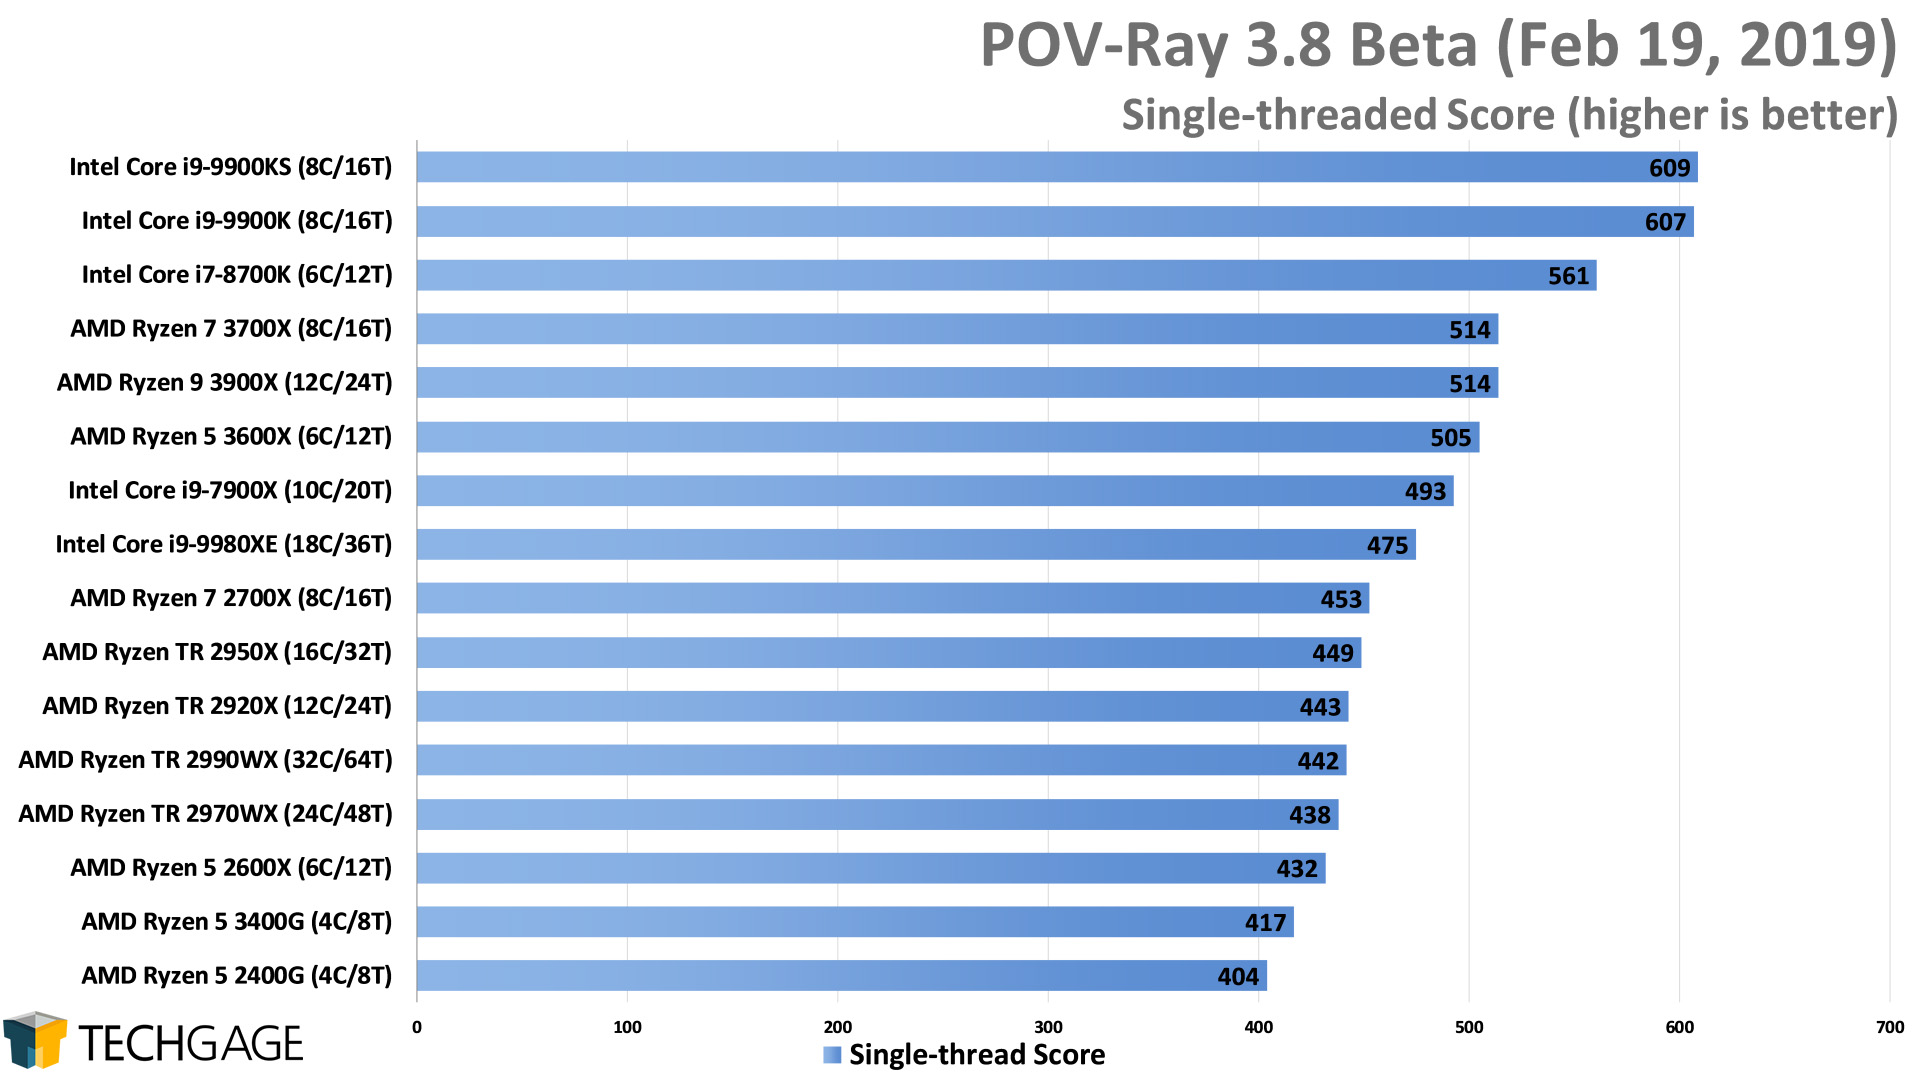 POV-Ray 3.8 Single-threaded Score (Intel Core i9-9900KS)